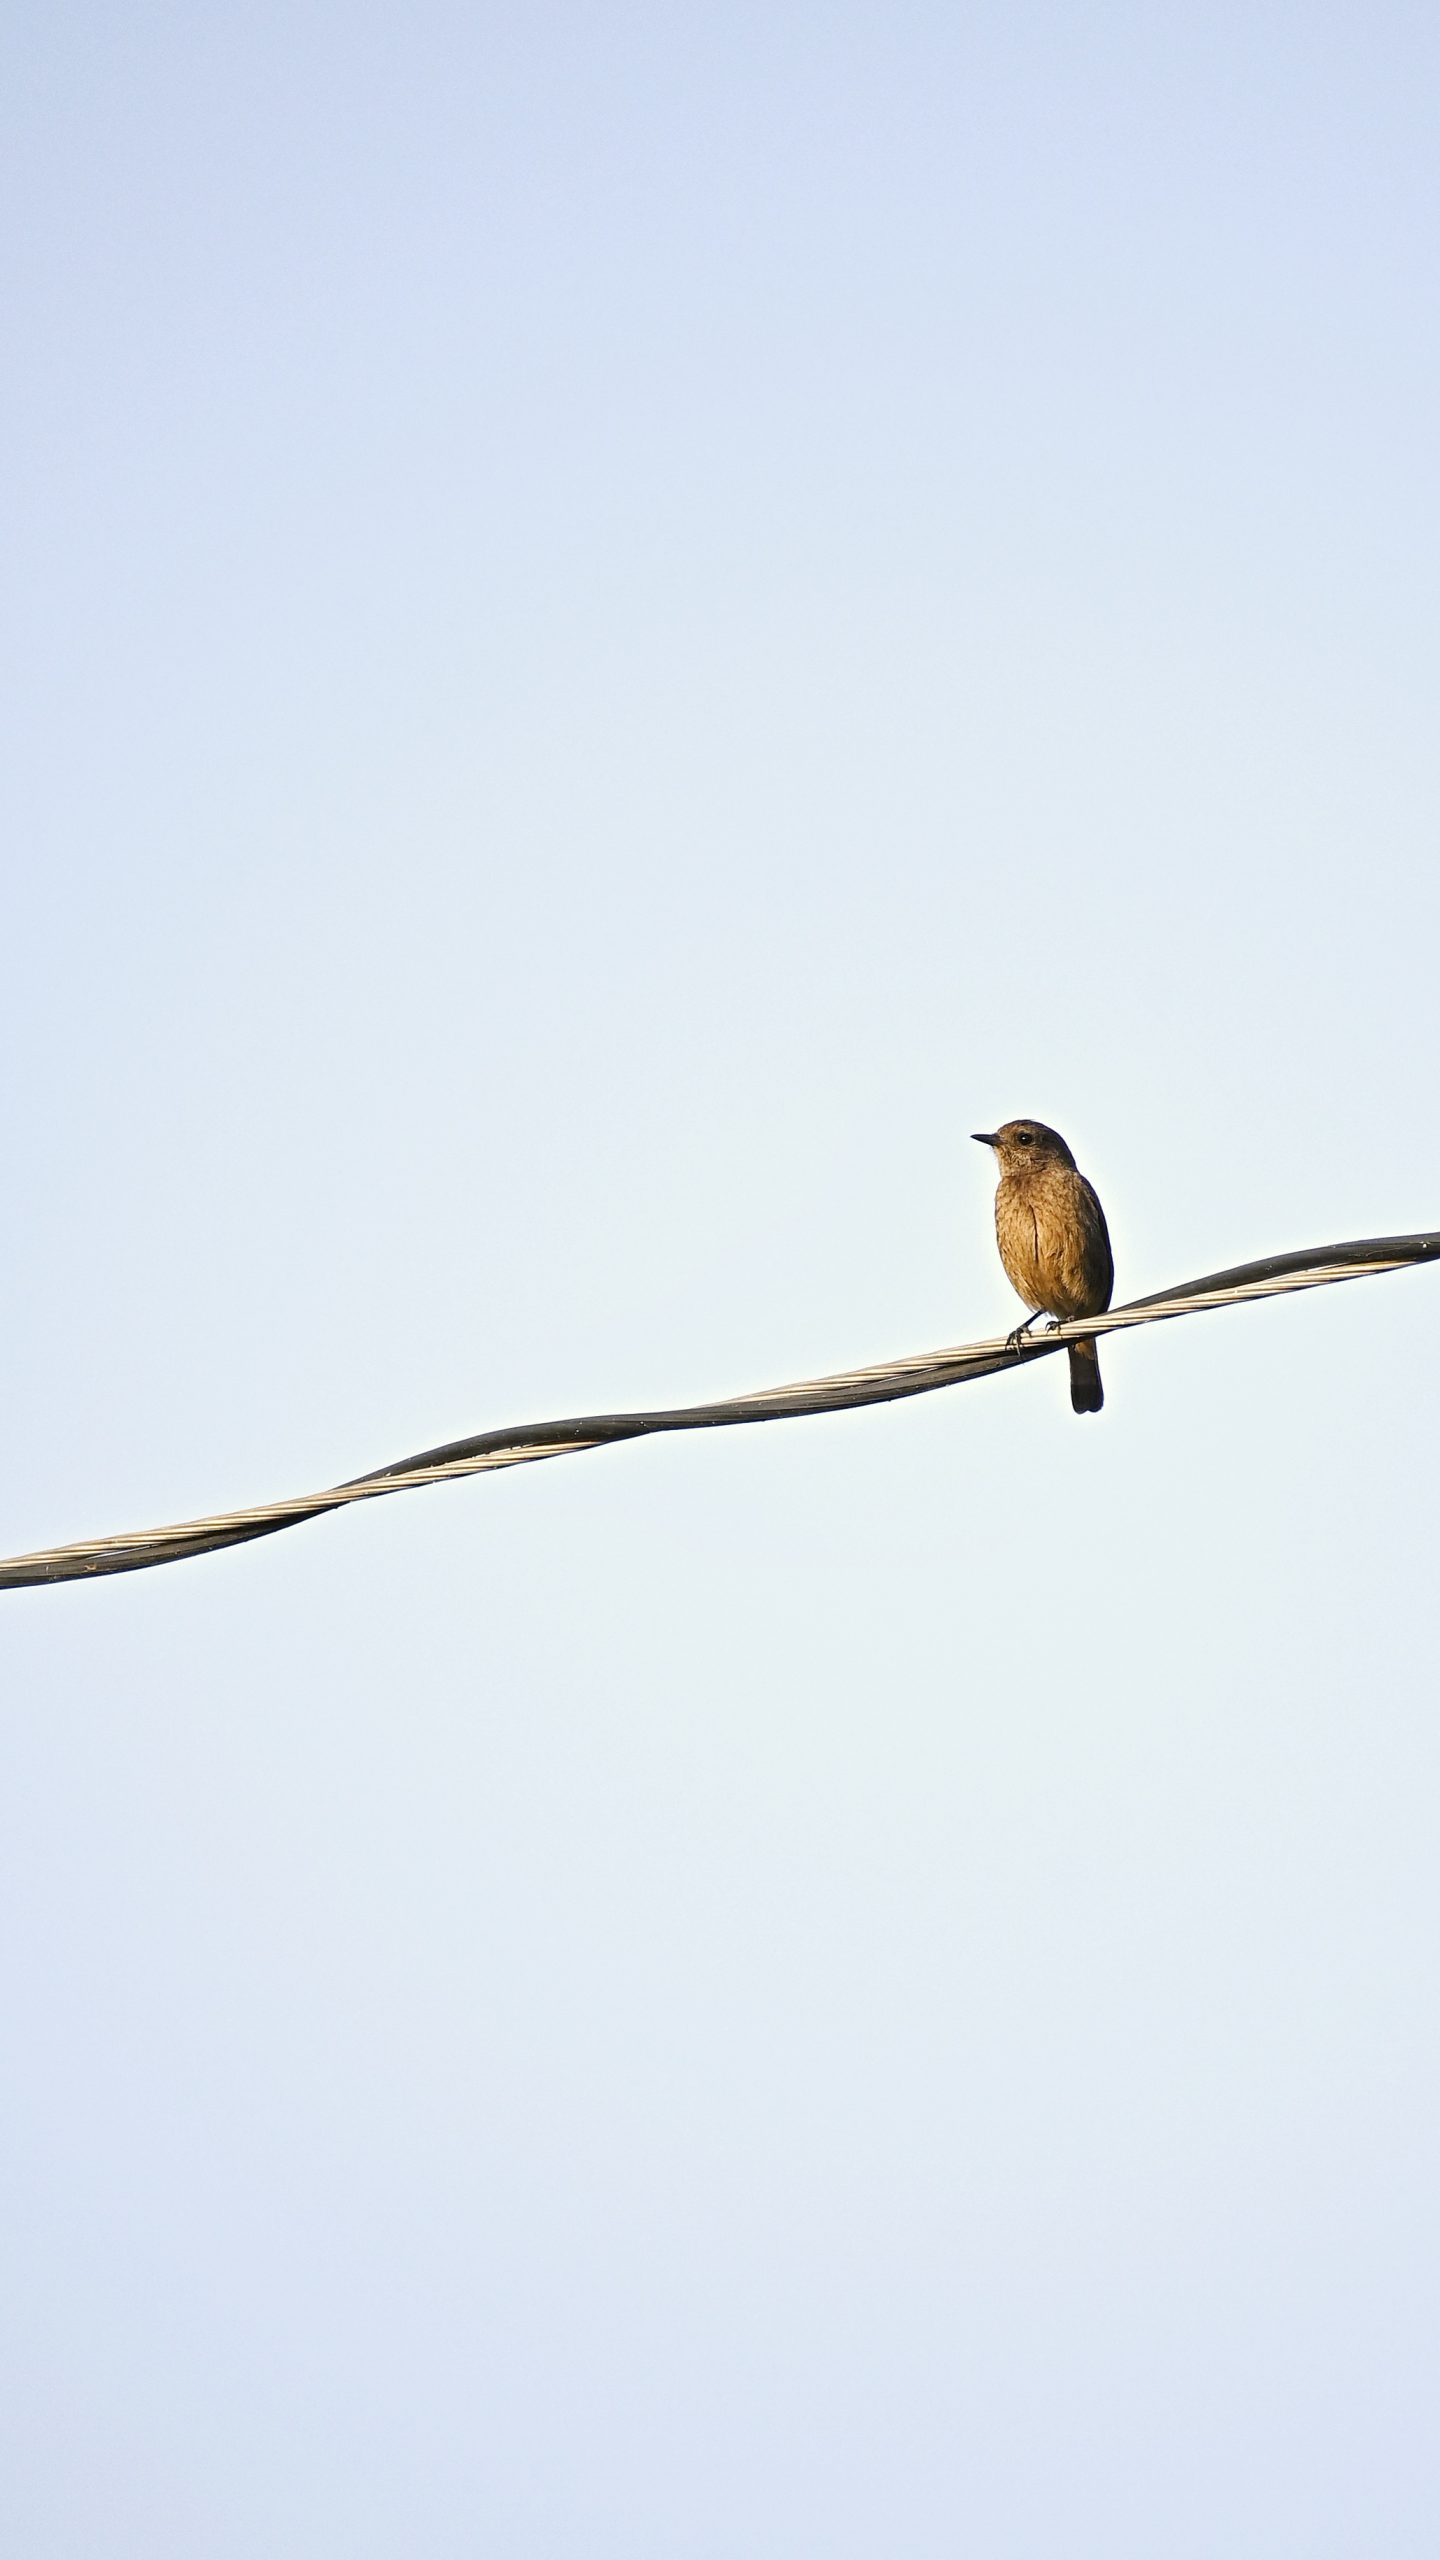 Bird sitting on a wire